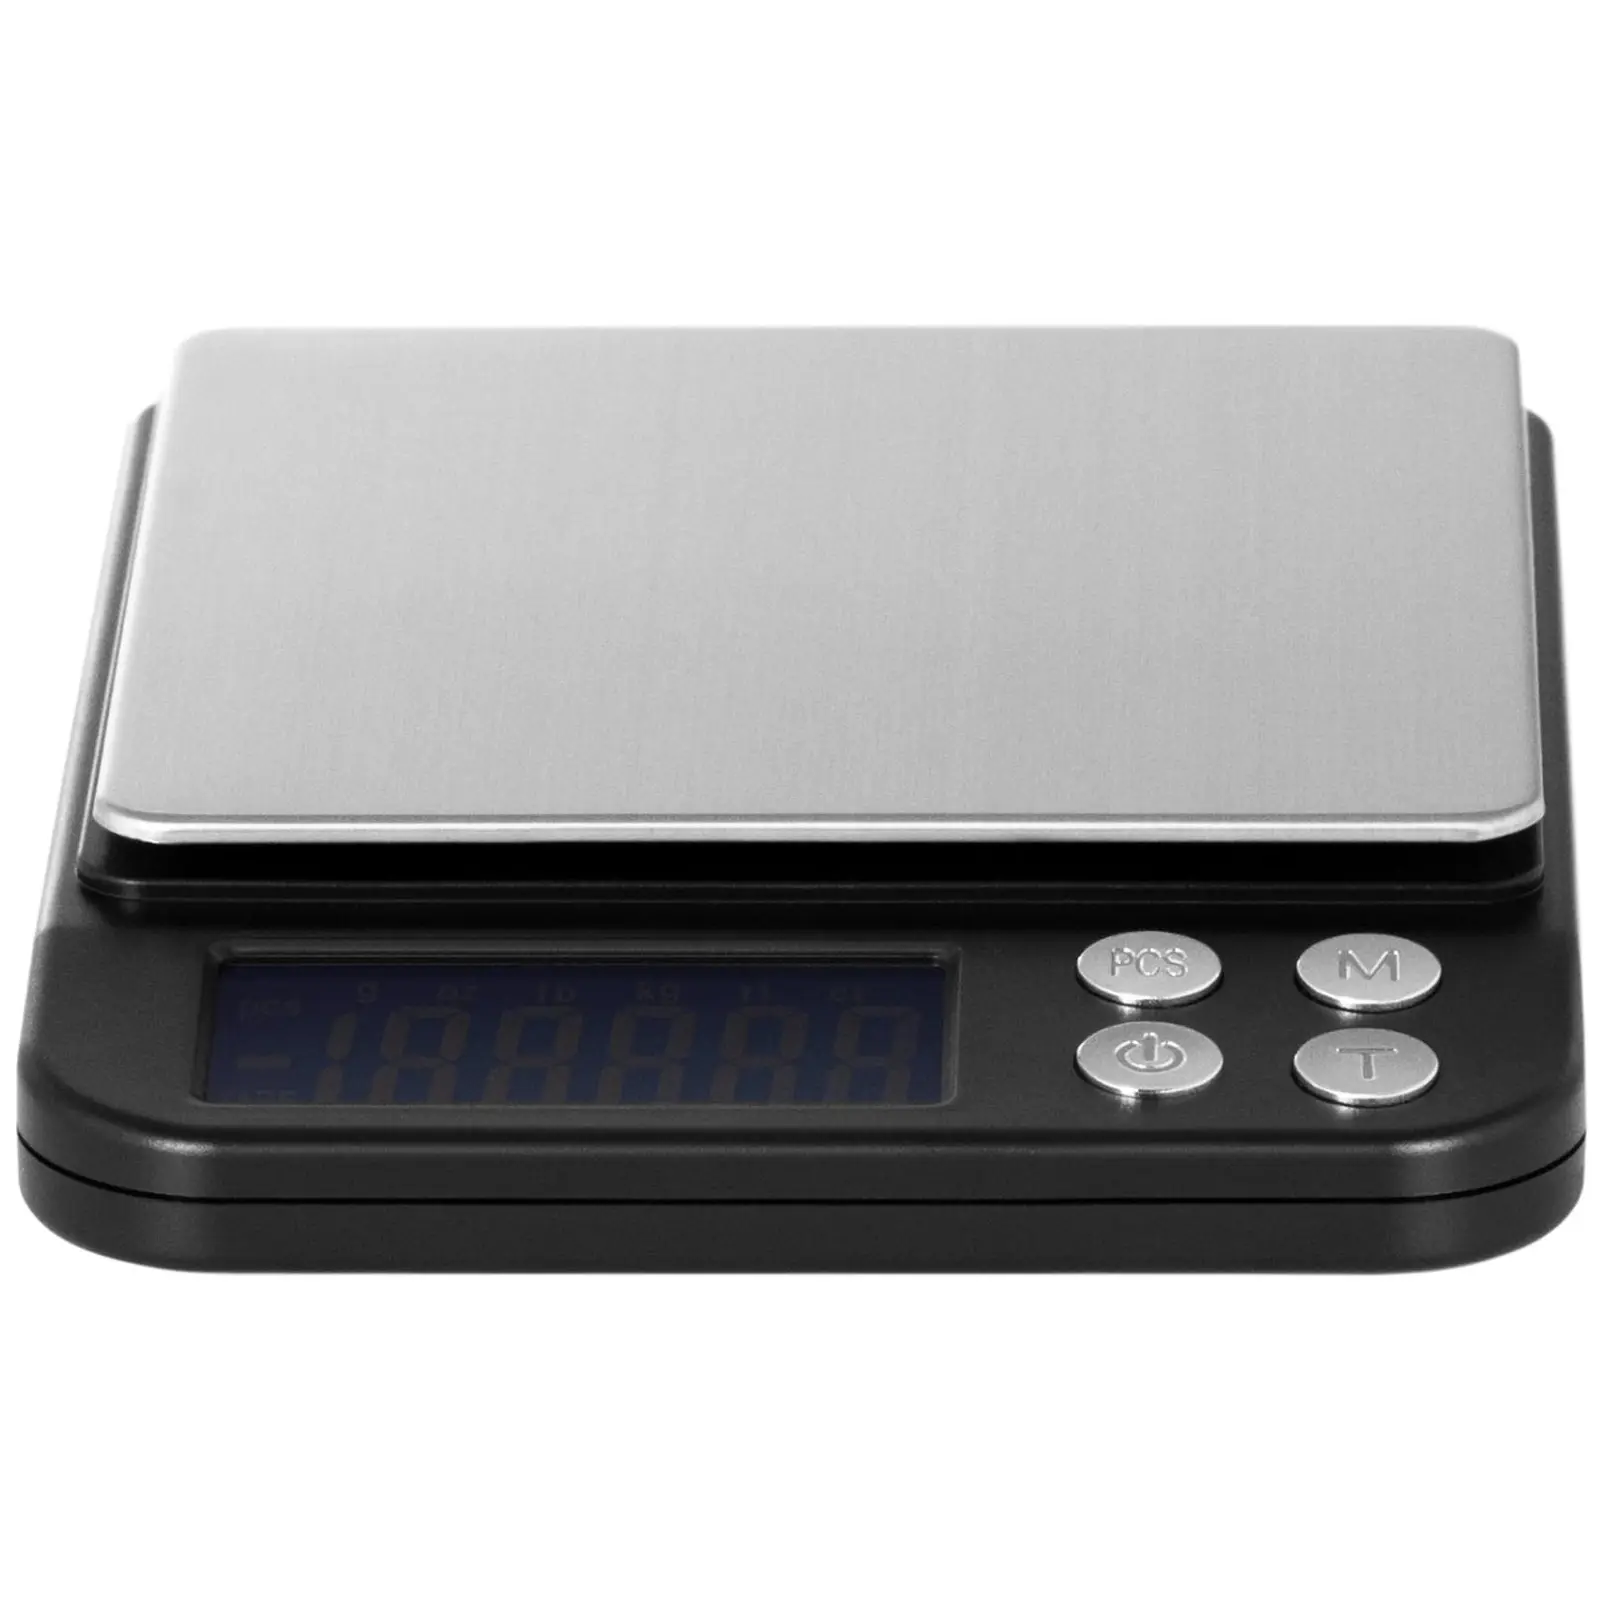 Digitaalinen pöytävaaka - 3 kg / 0,1 g